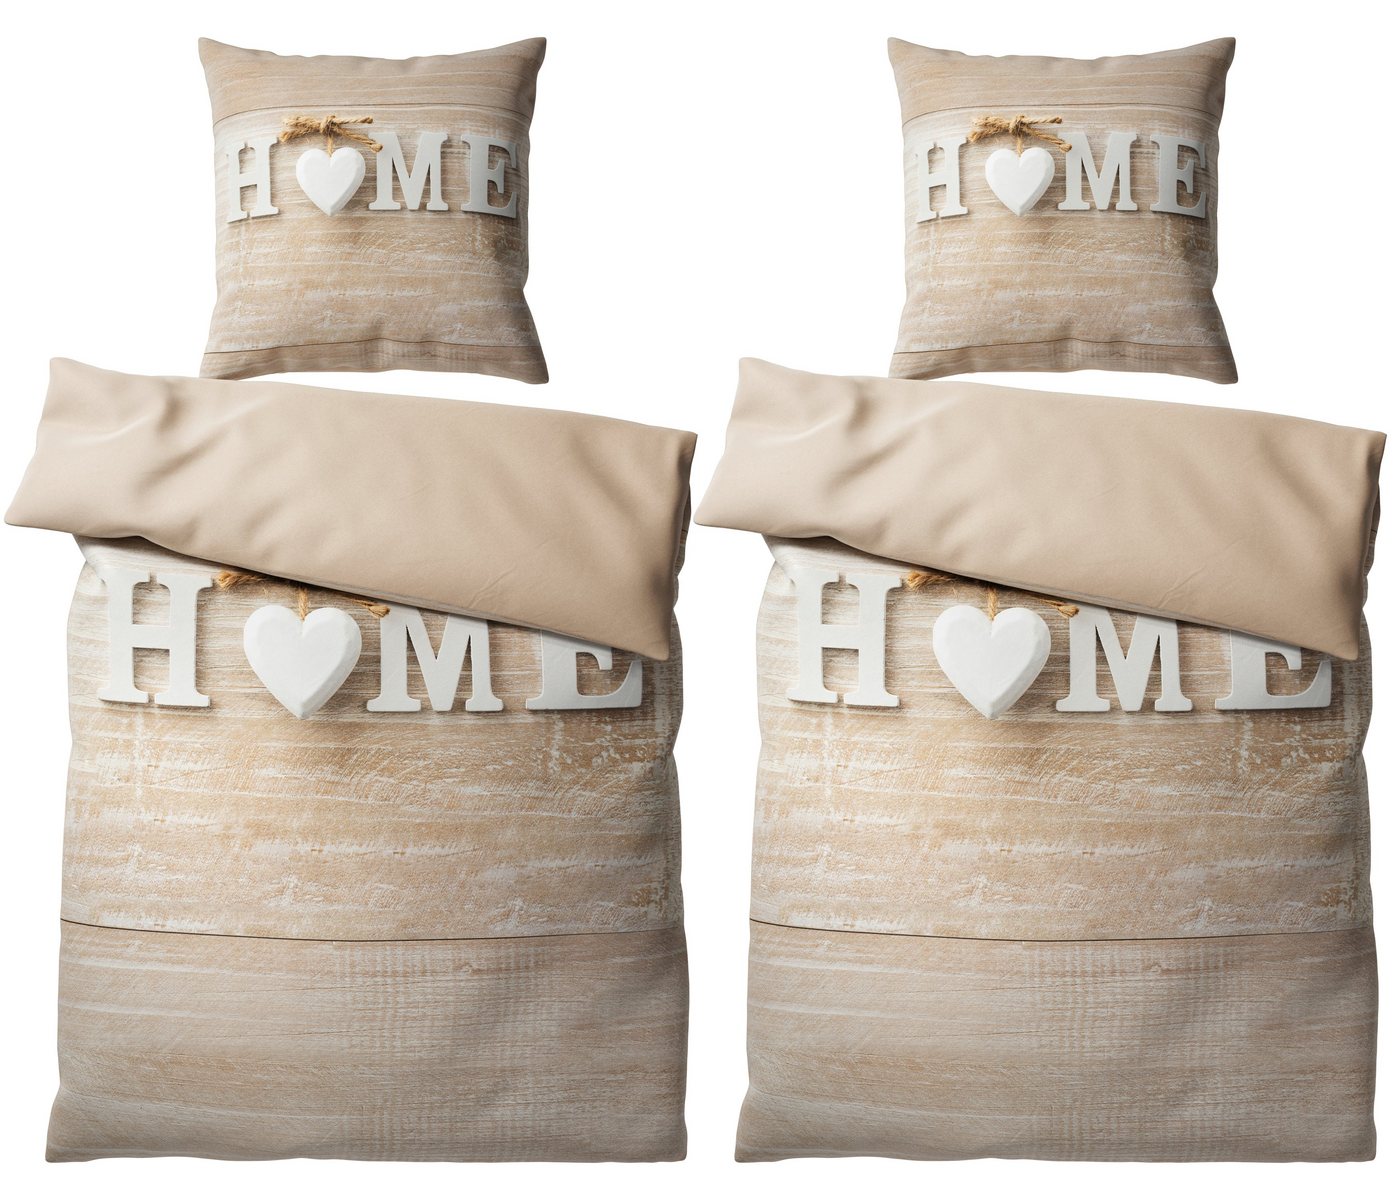 Bettwäsche Home 135x200 cm, Bettbezug und Kissenbezug, Sanilo, Baumwolle, 4 teilig von Sanilo